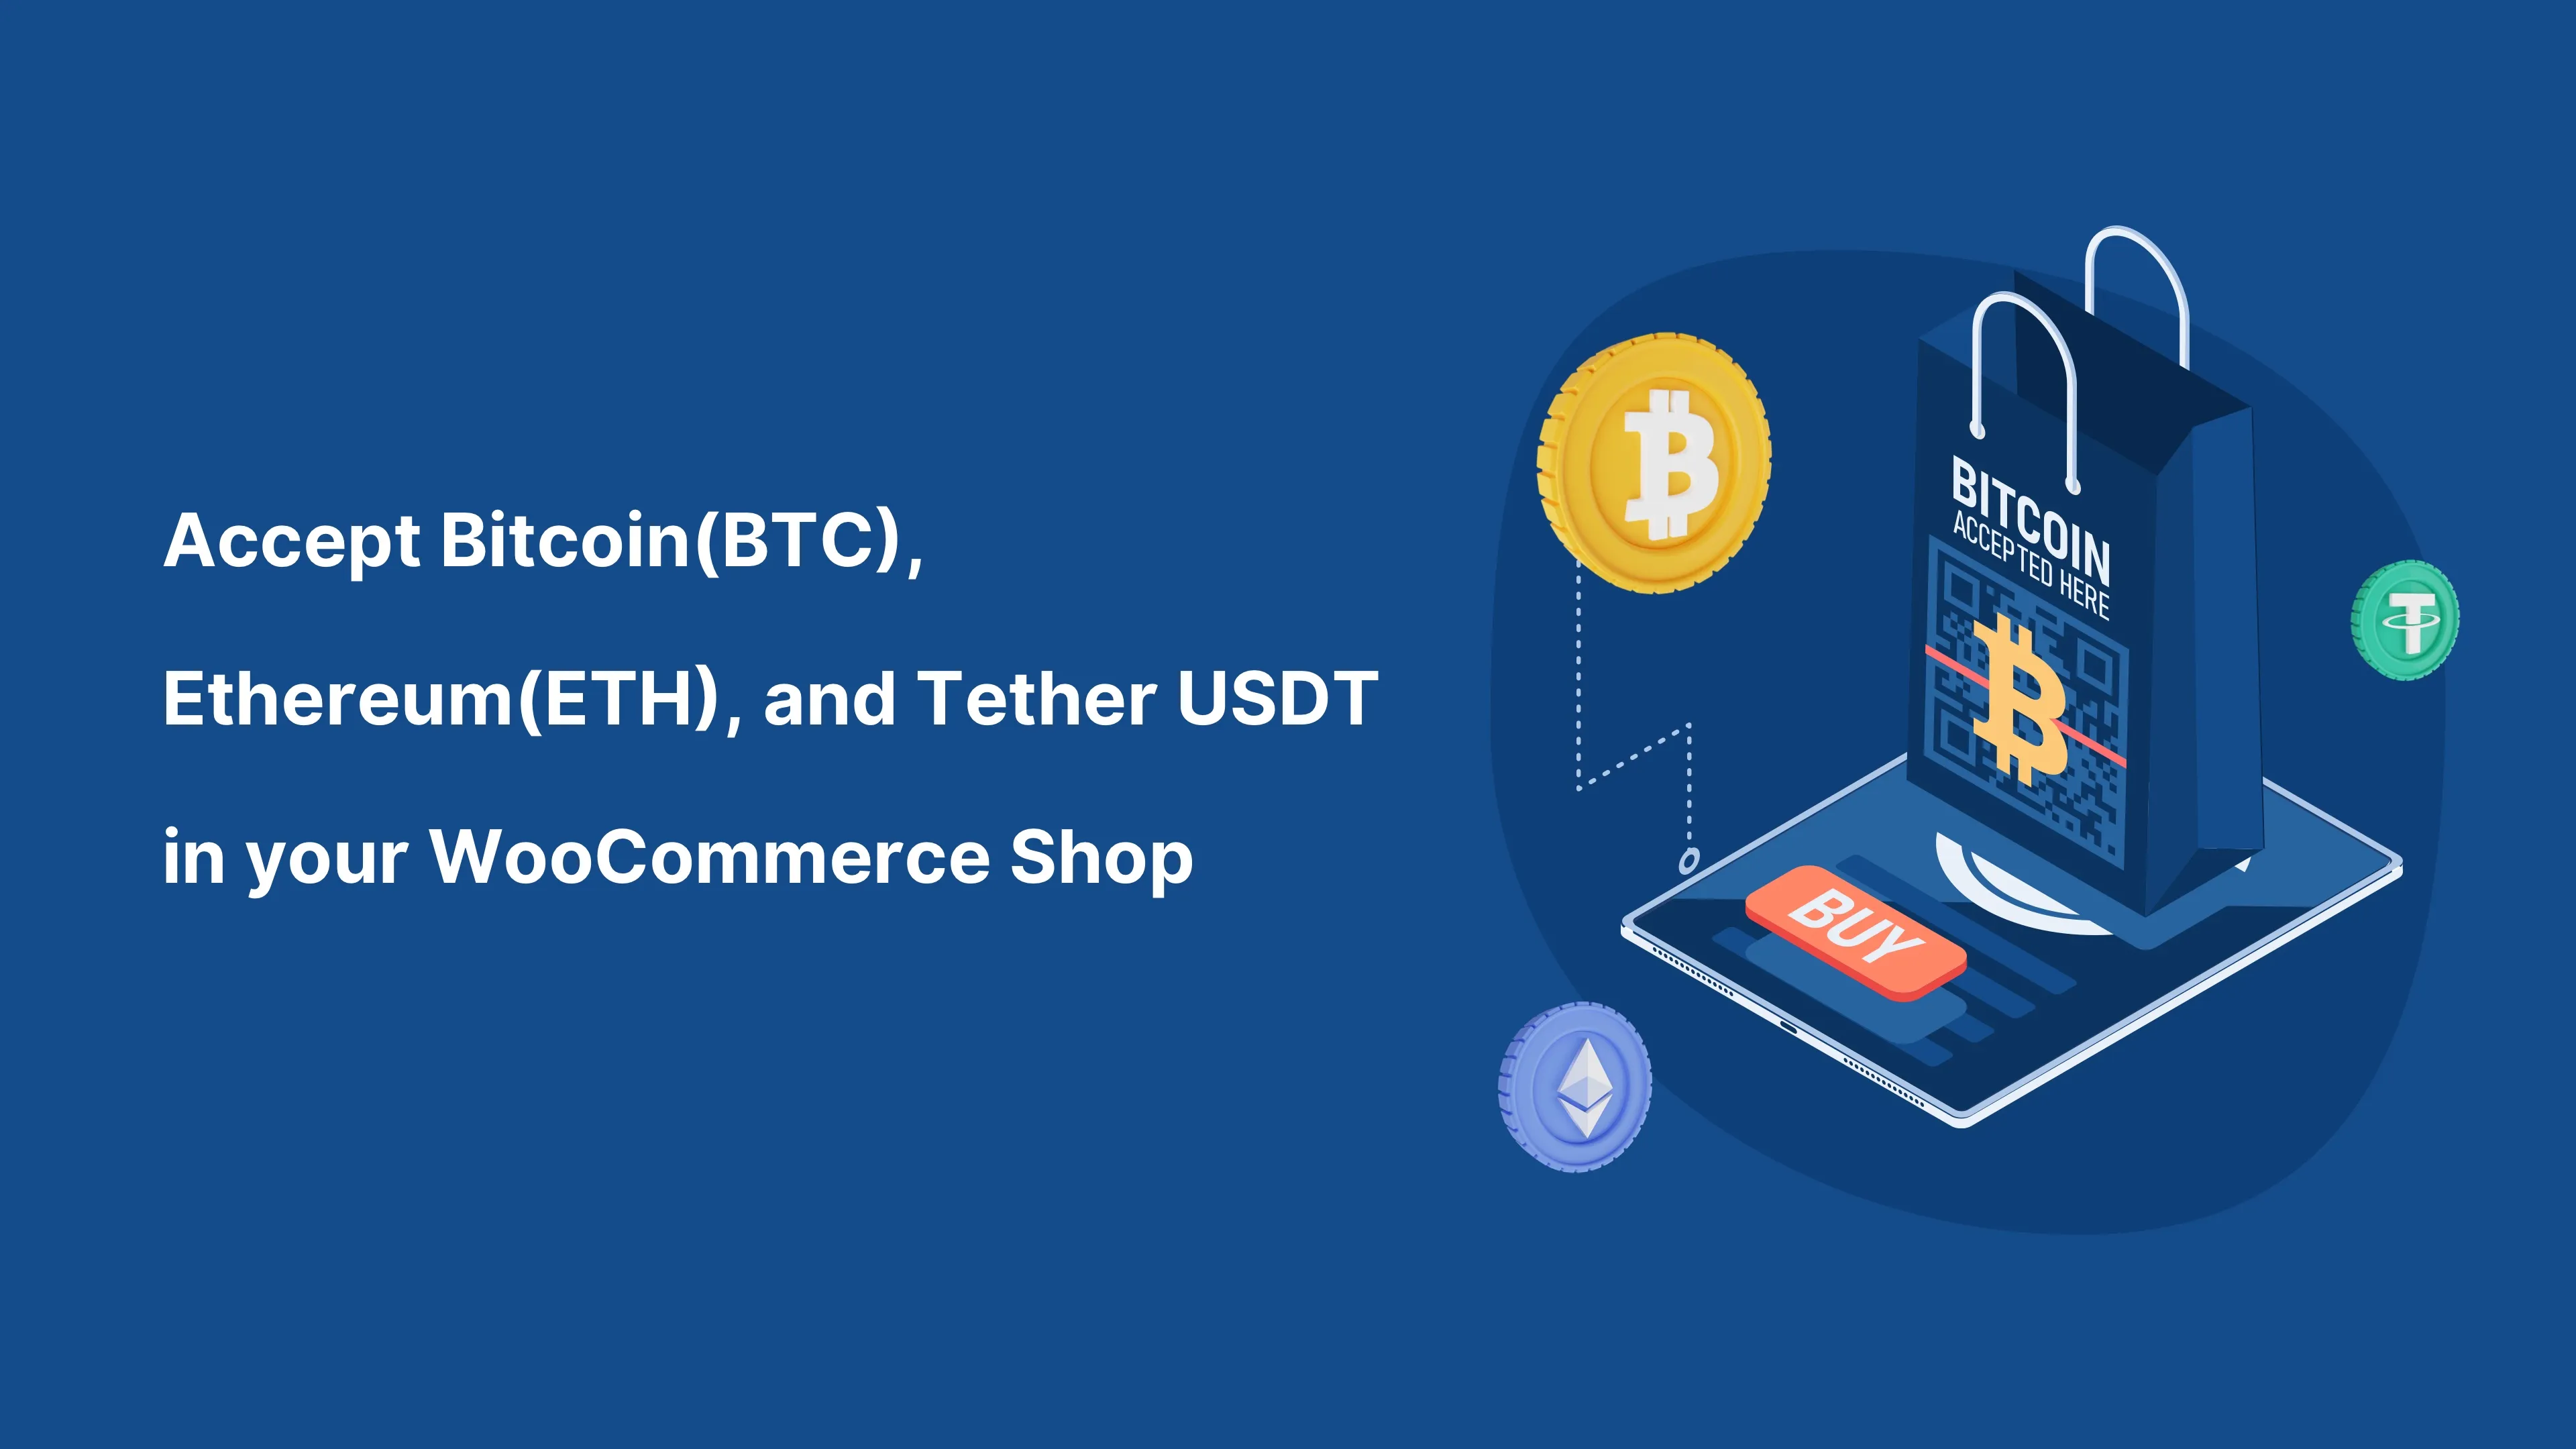 Acceptez Bitcoin (BTC) et toute crypto-monnaie dans votre boutique WooCommerce